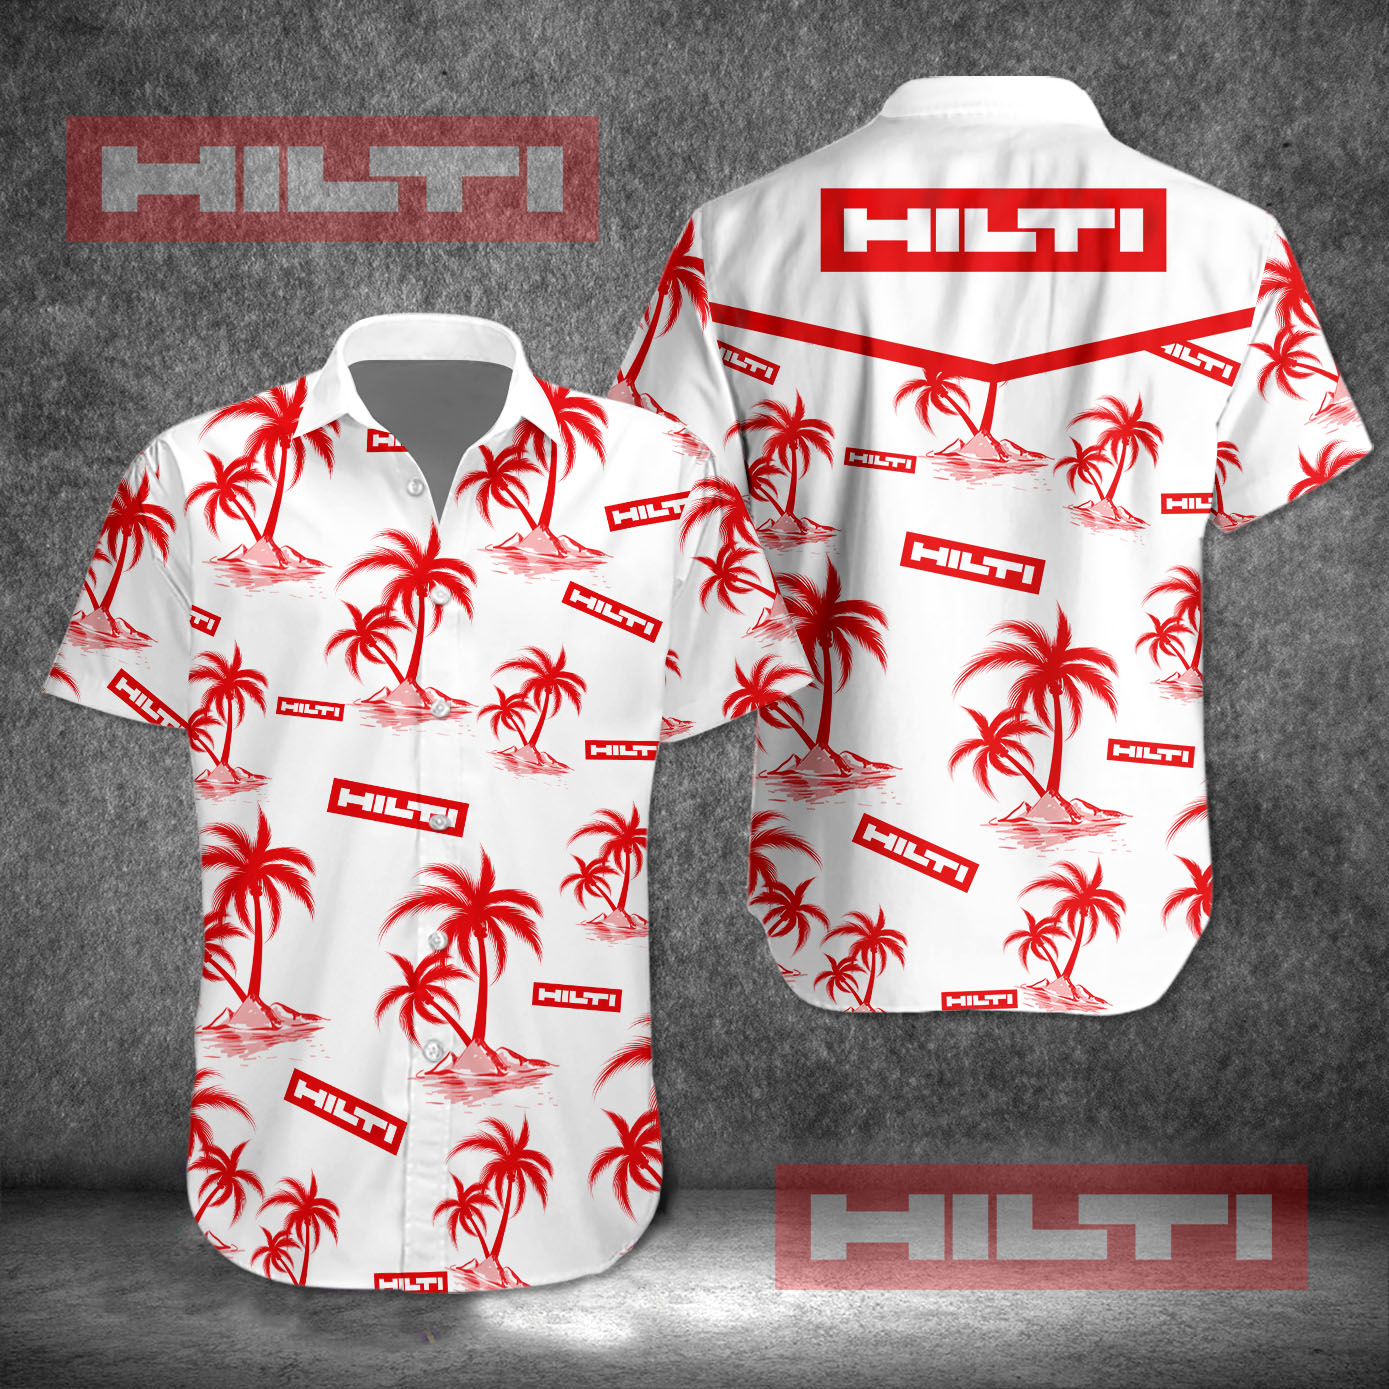 hilti hawaiian shirt 8064 GncoR